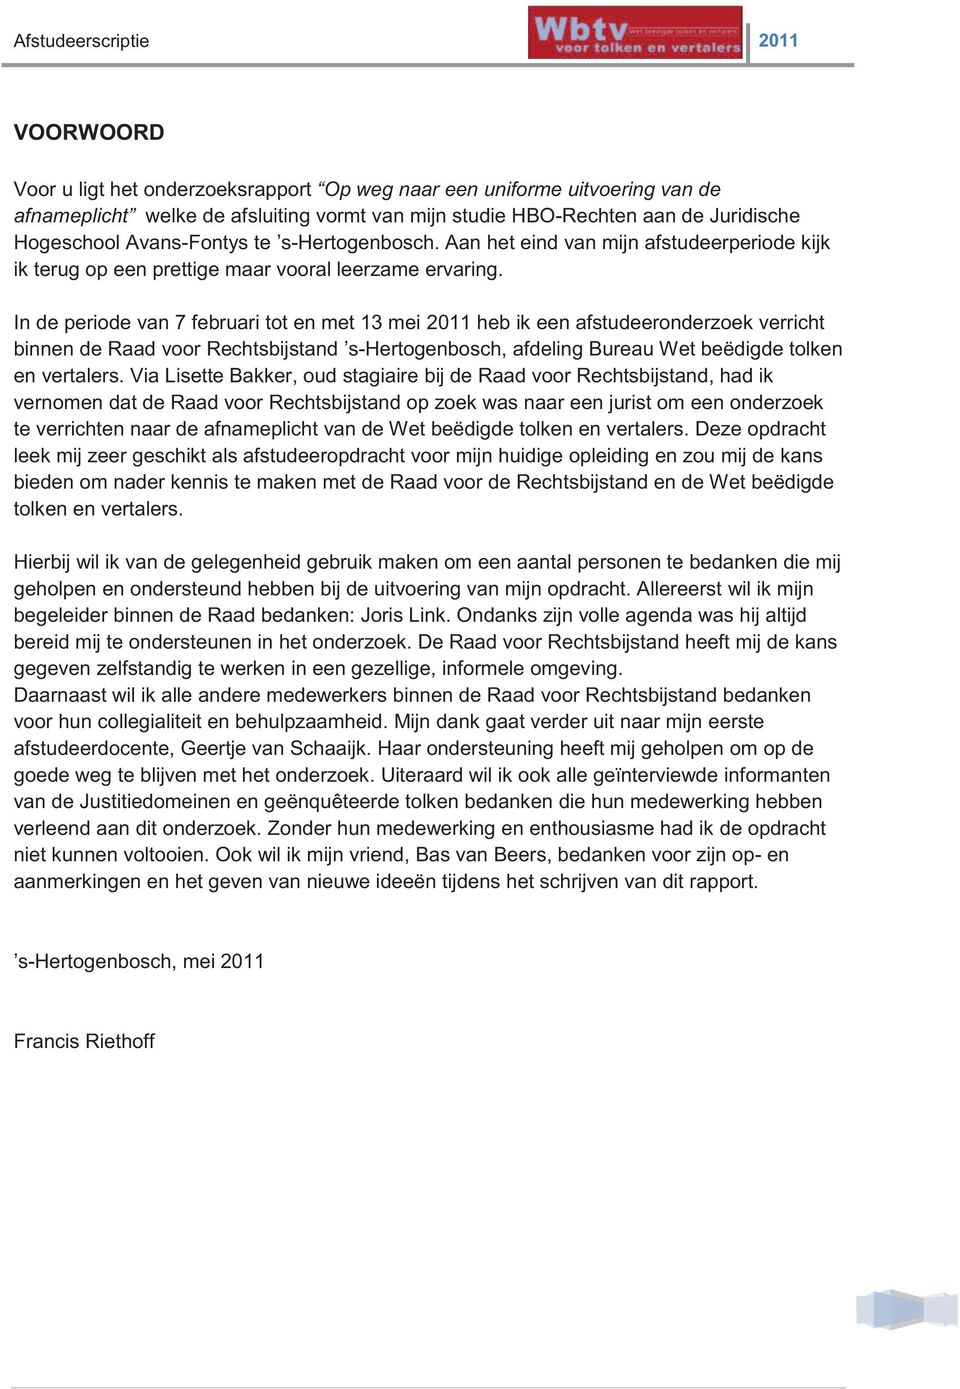 In de periode van 7 februari tot en met 13 mei 2011 heb ik een afstudeeronderzoek verricht binnen de Raad voor Rechtsbijstand s-hertogenbosch, afdeling Bureau Wet beëdigde tolken en vertalers.